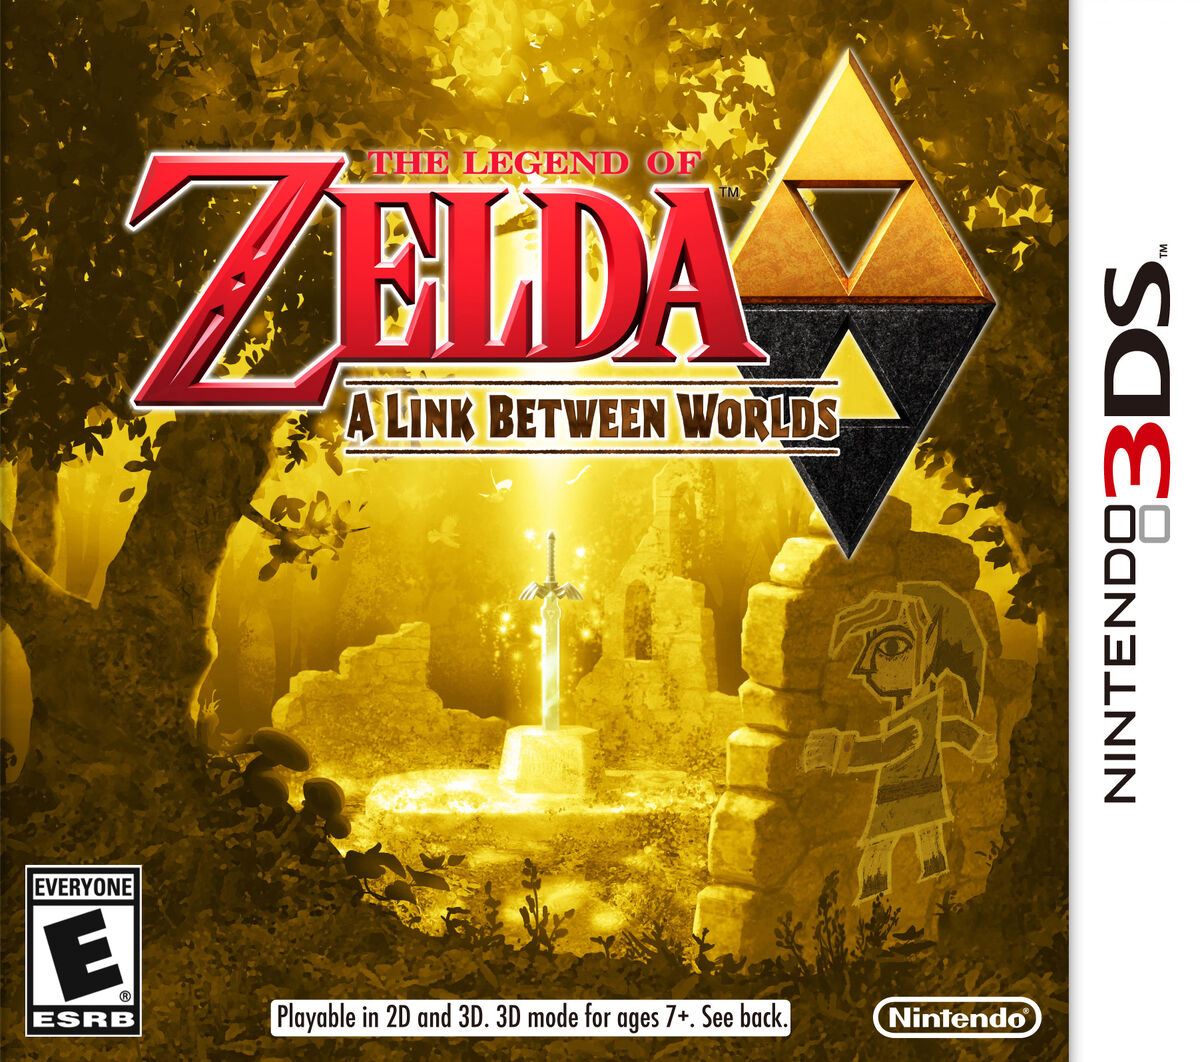 Link (Breath of the Wild) - Zelda Dungeon Wiki, a The Legend of Zelda wiki